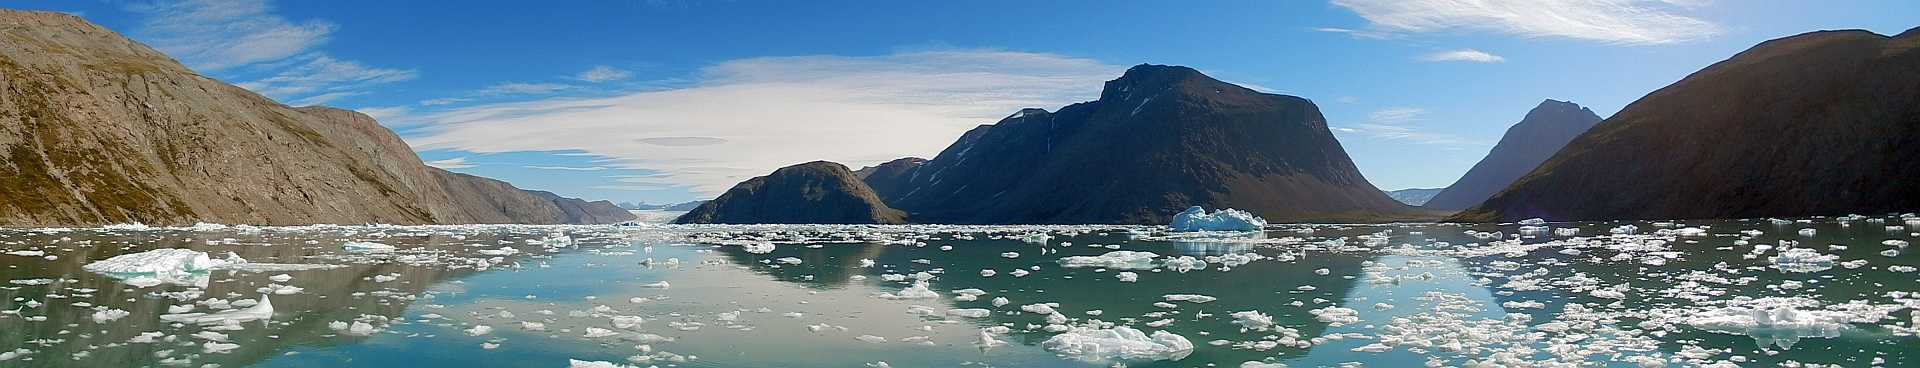 Quelle: DSCN4502-icefjord-pan-kl.jpg